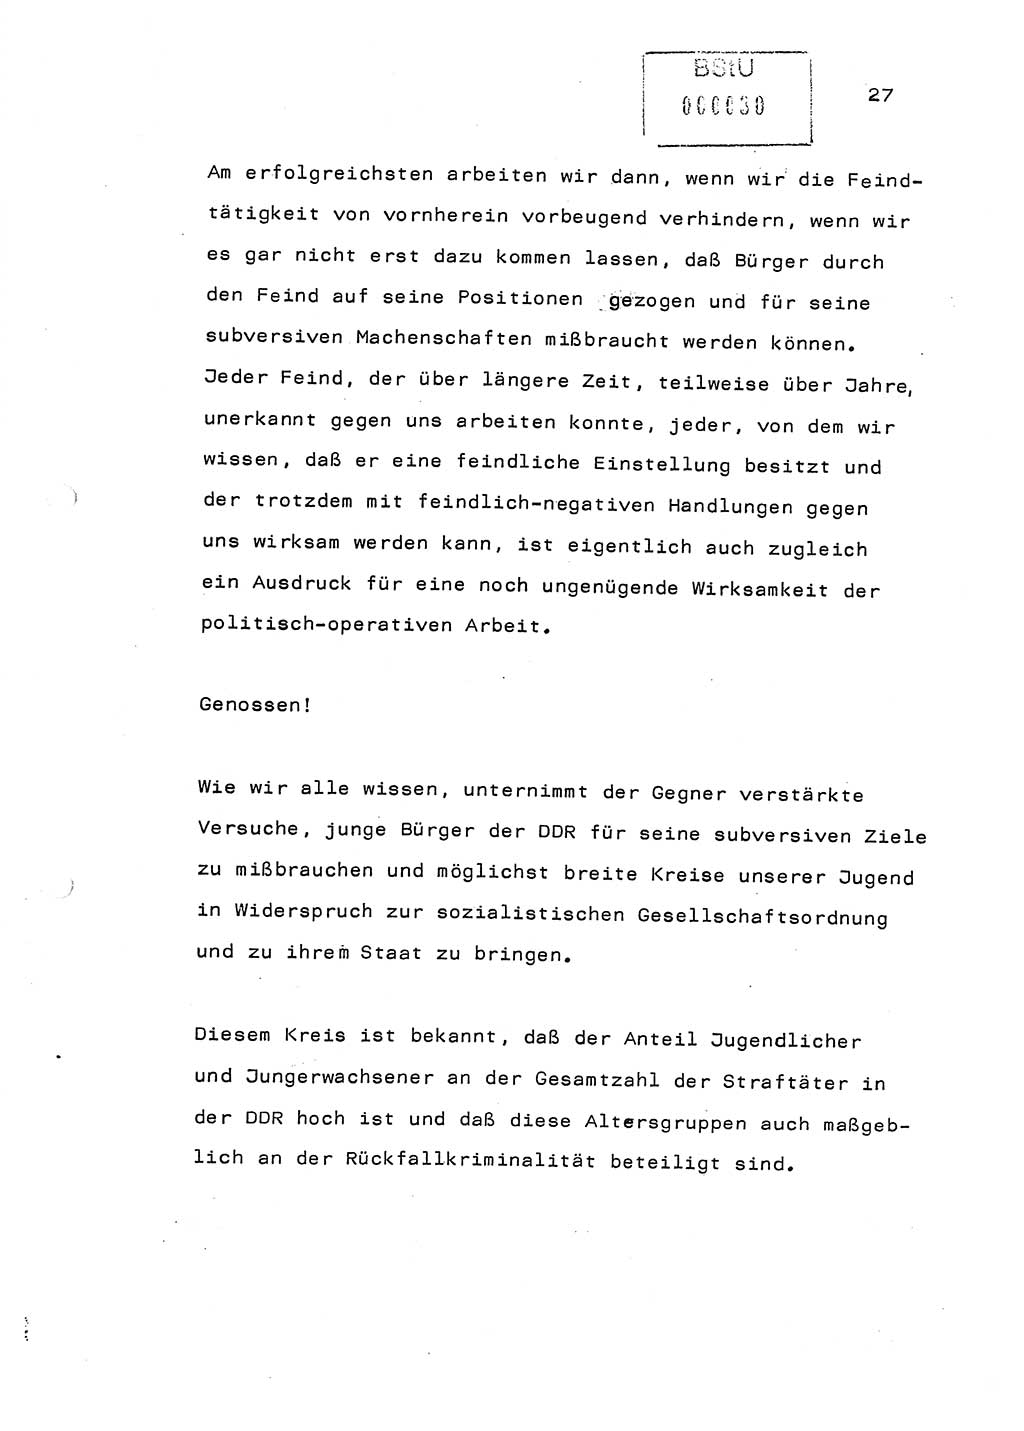 Referat (Generaloberst Erich Mielke) auf der Zentralen Dienstkonferenz am 24.5.1979 [Ministerium für Staatssicherheit (MfS), Deutsche Demokratische Republik (DDR), Der Minister], Berlin 1979, Seite 27 (Ref. DK DDR MfS Min. /79 1979, S. 27)